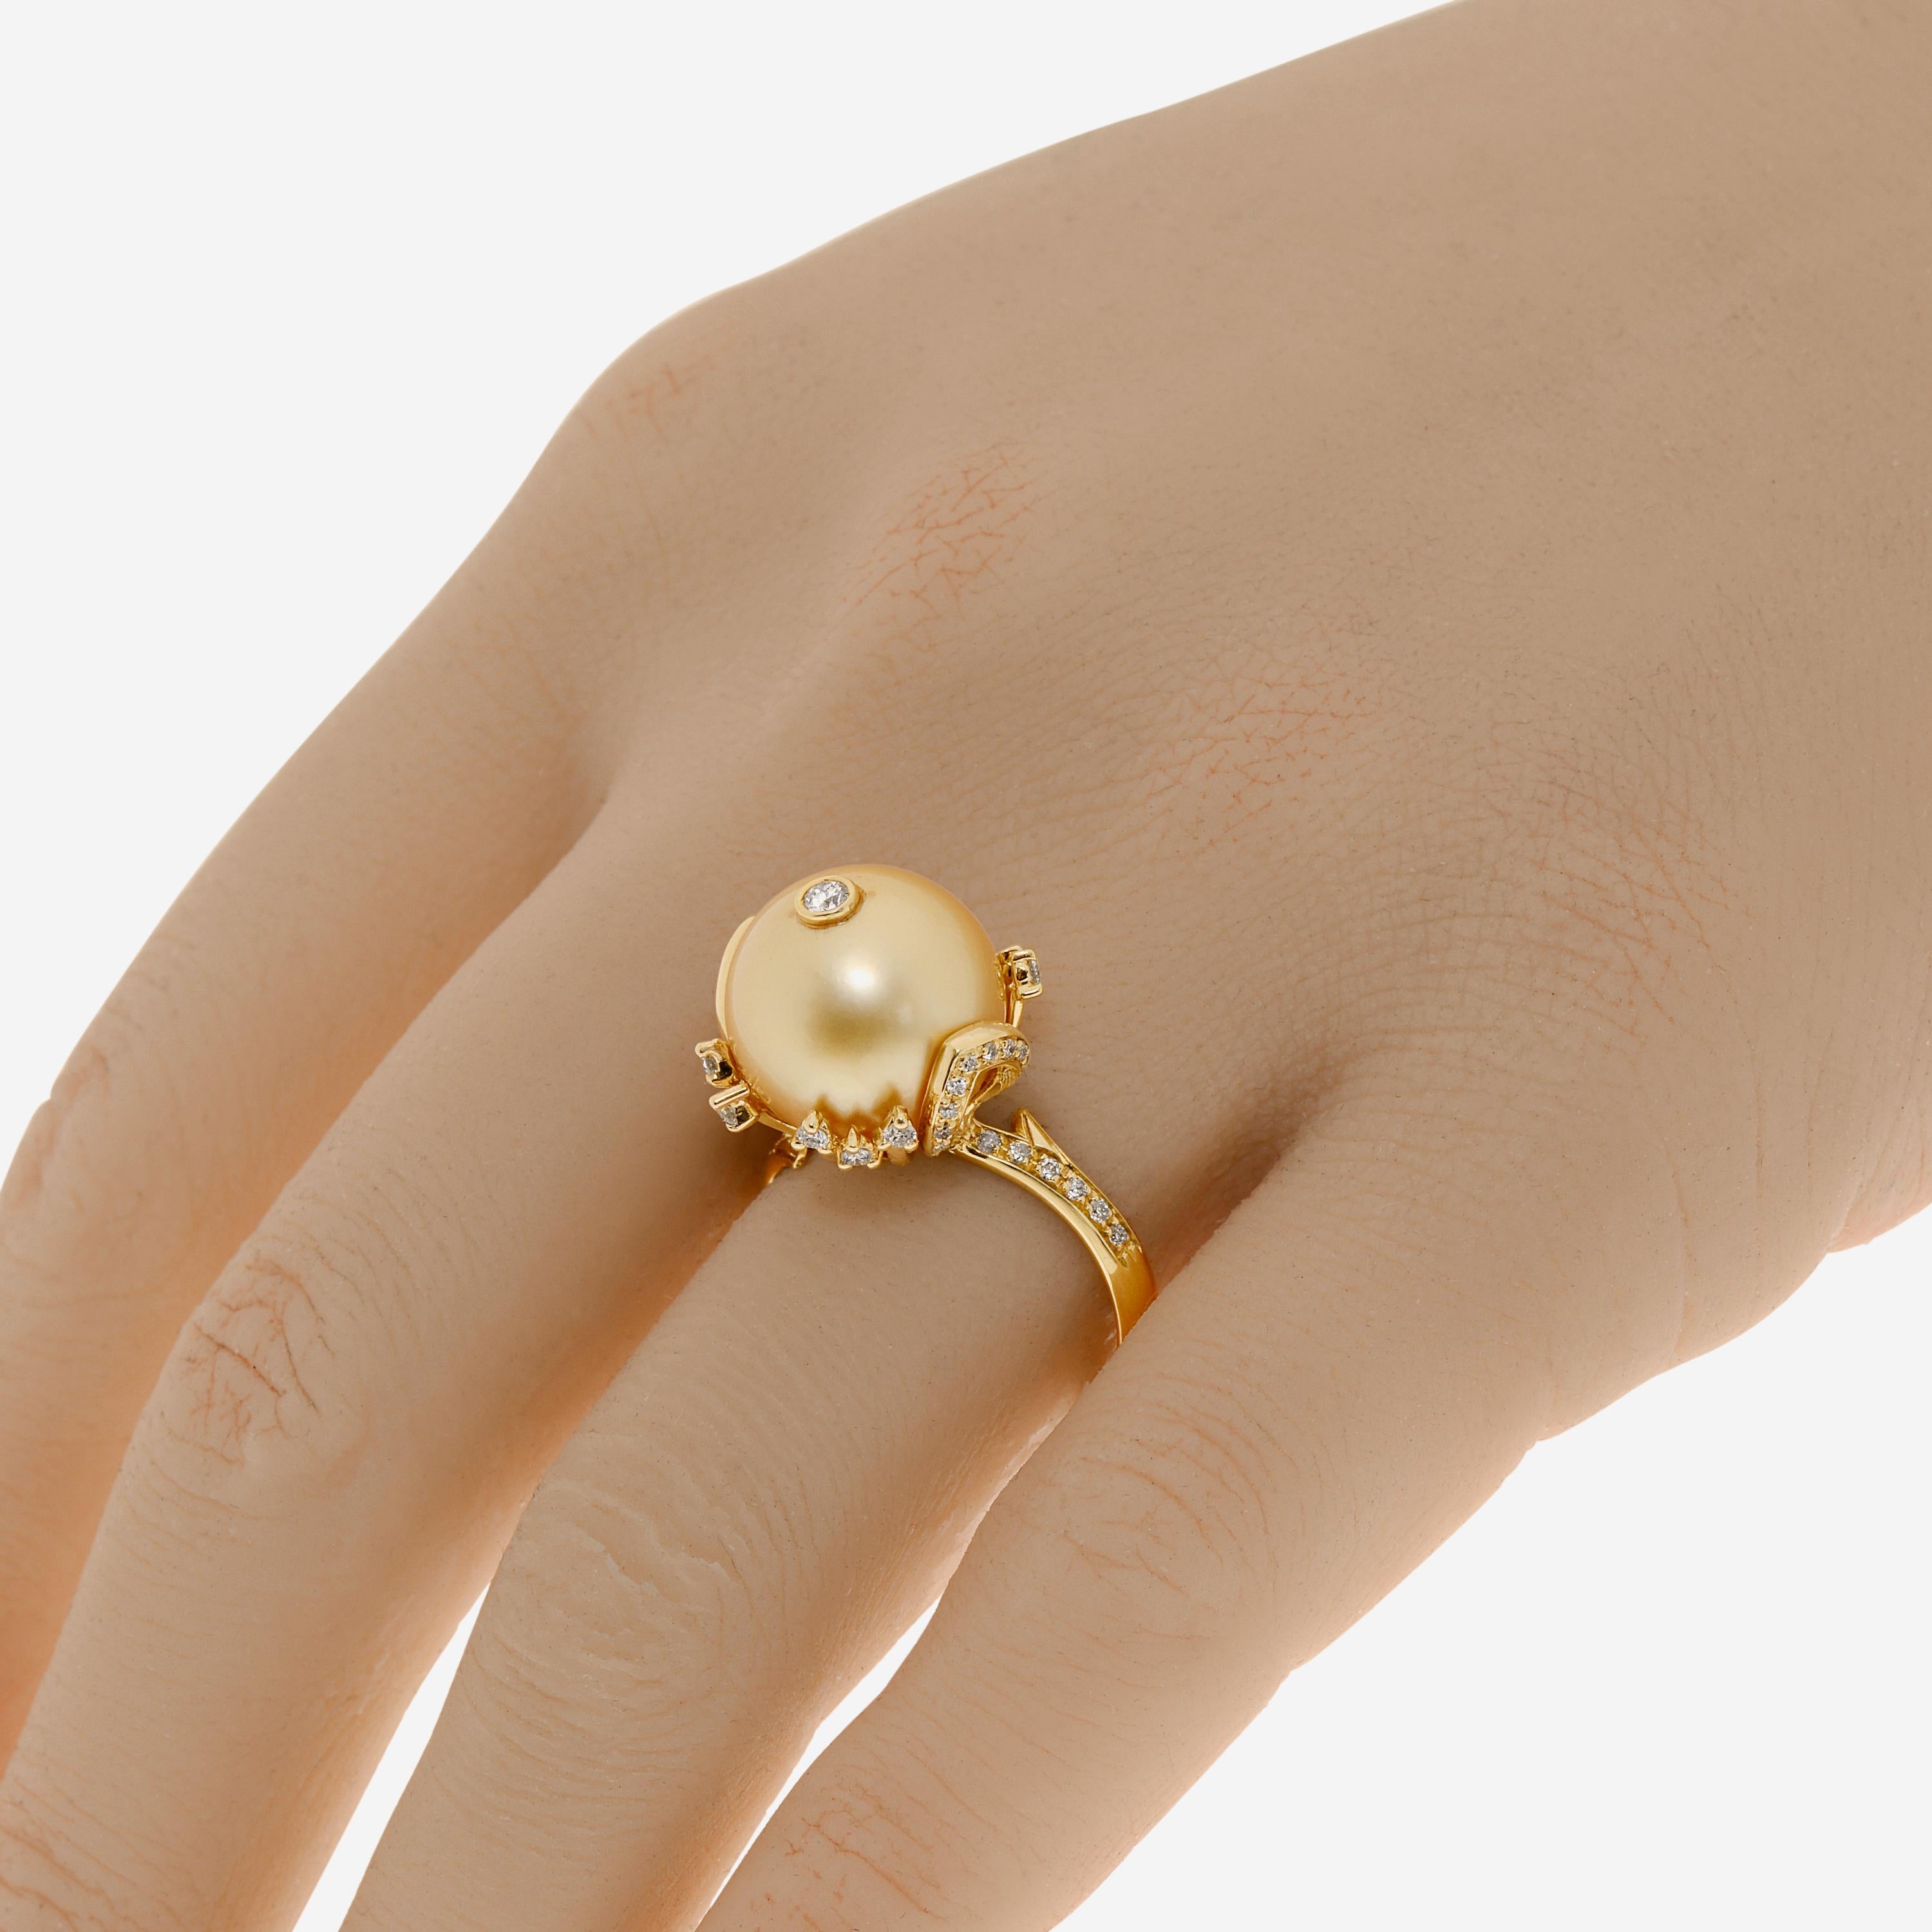 ZYDO Ring aus 18 Karat Gelbgold mit 0,35 ct. tw. Diamanten, die eine 12 mm große Perle umgeben. Die Ringgröße ist 7 (54,4). Die Dekoration ist 5/8